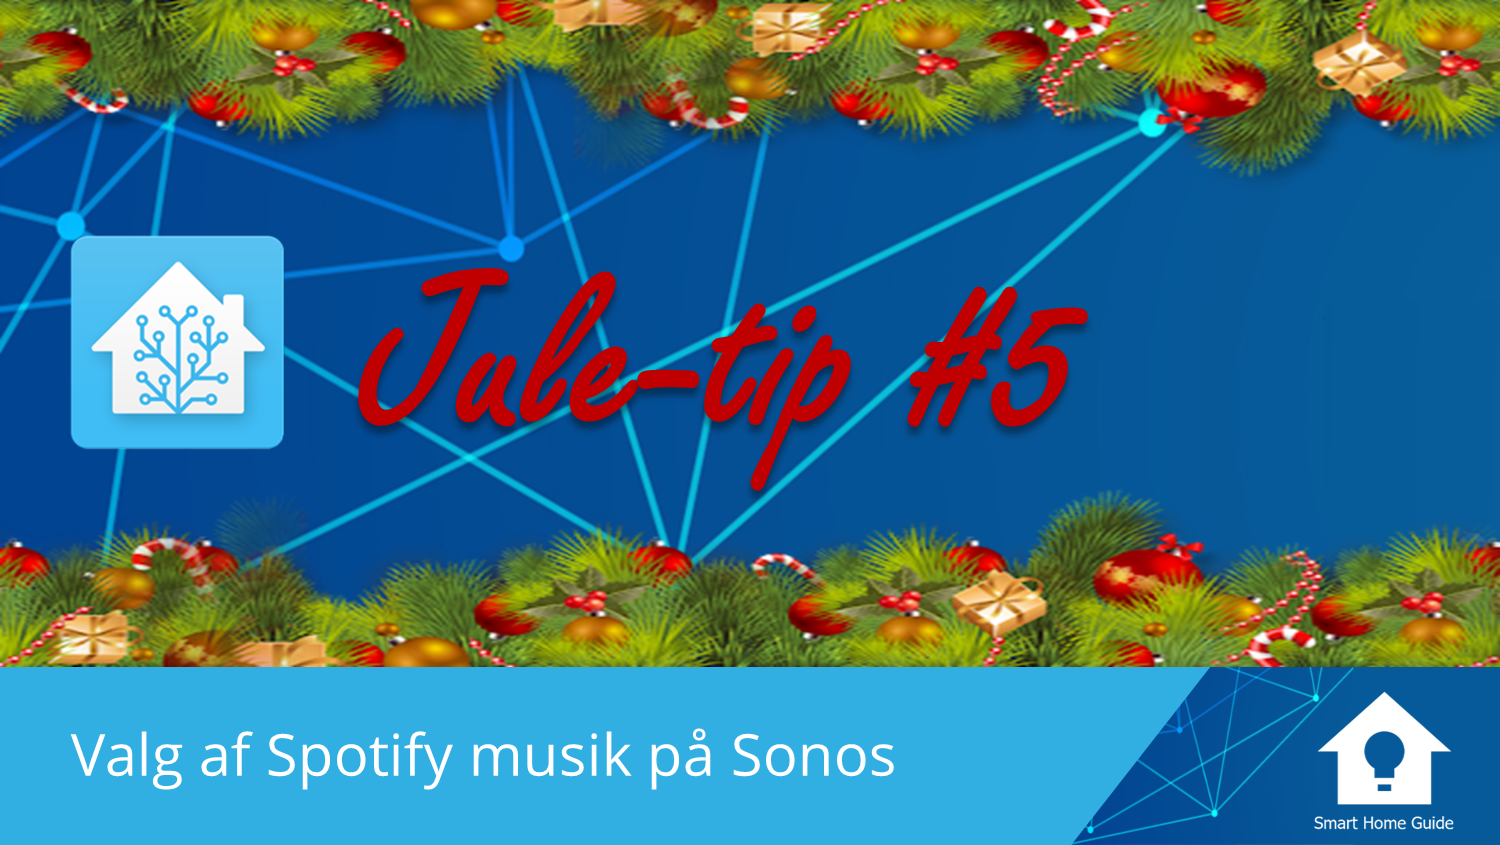 Den anden dag beton forretning HA Jule-tip #5: Valg af Spotify musik på Sonos | Smart Home Guide